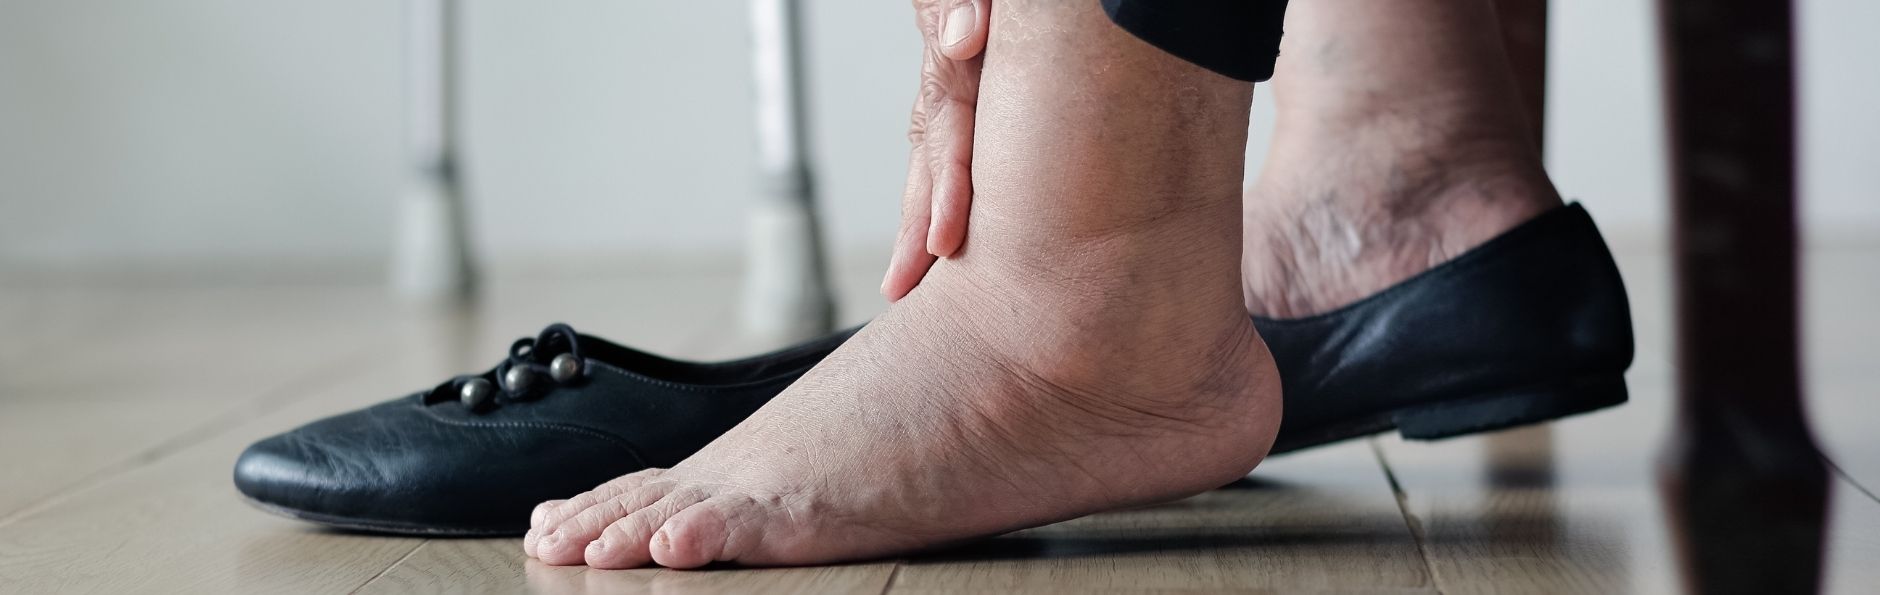 Opgezette voeten kunnen zorgen voor pijn tijdens het lopen